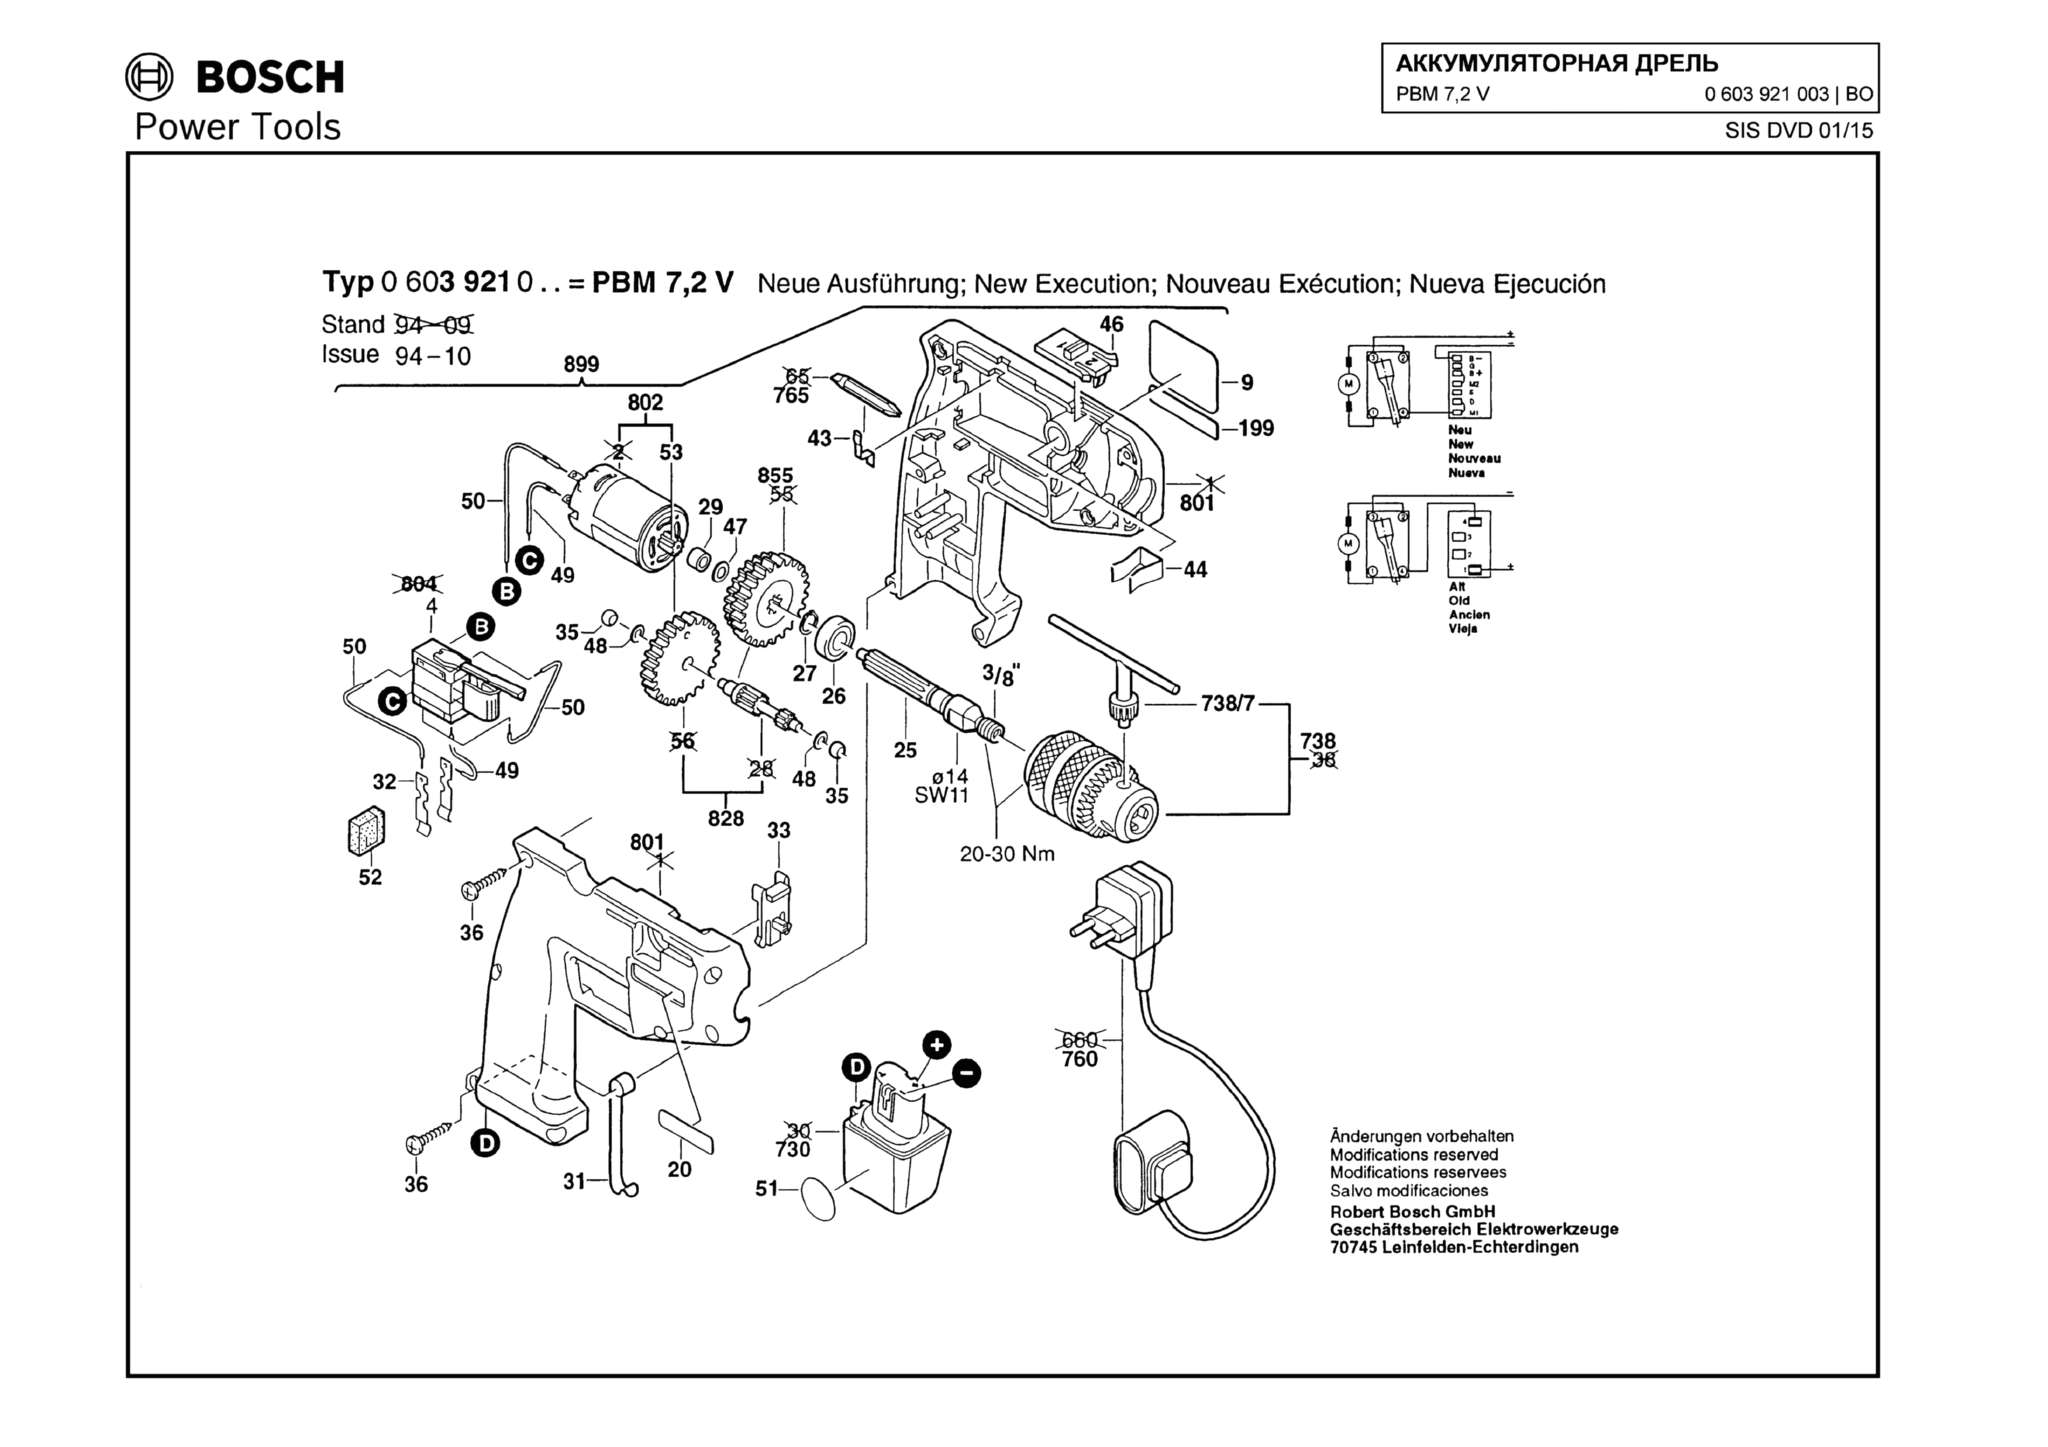 Запчасти, схема и деталировка Bosch PBM 7,2 V (ТИП 0603921003)